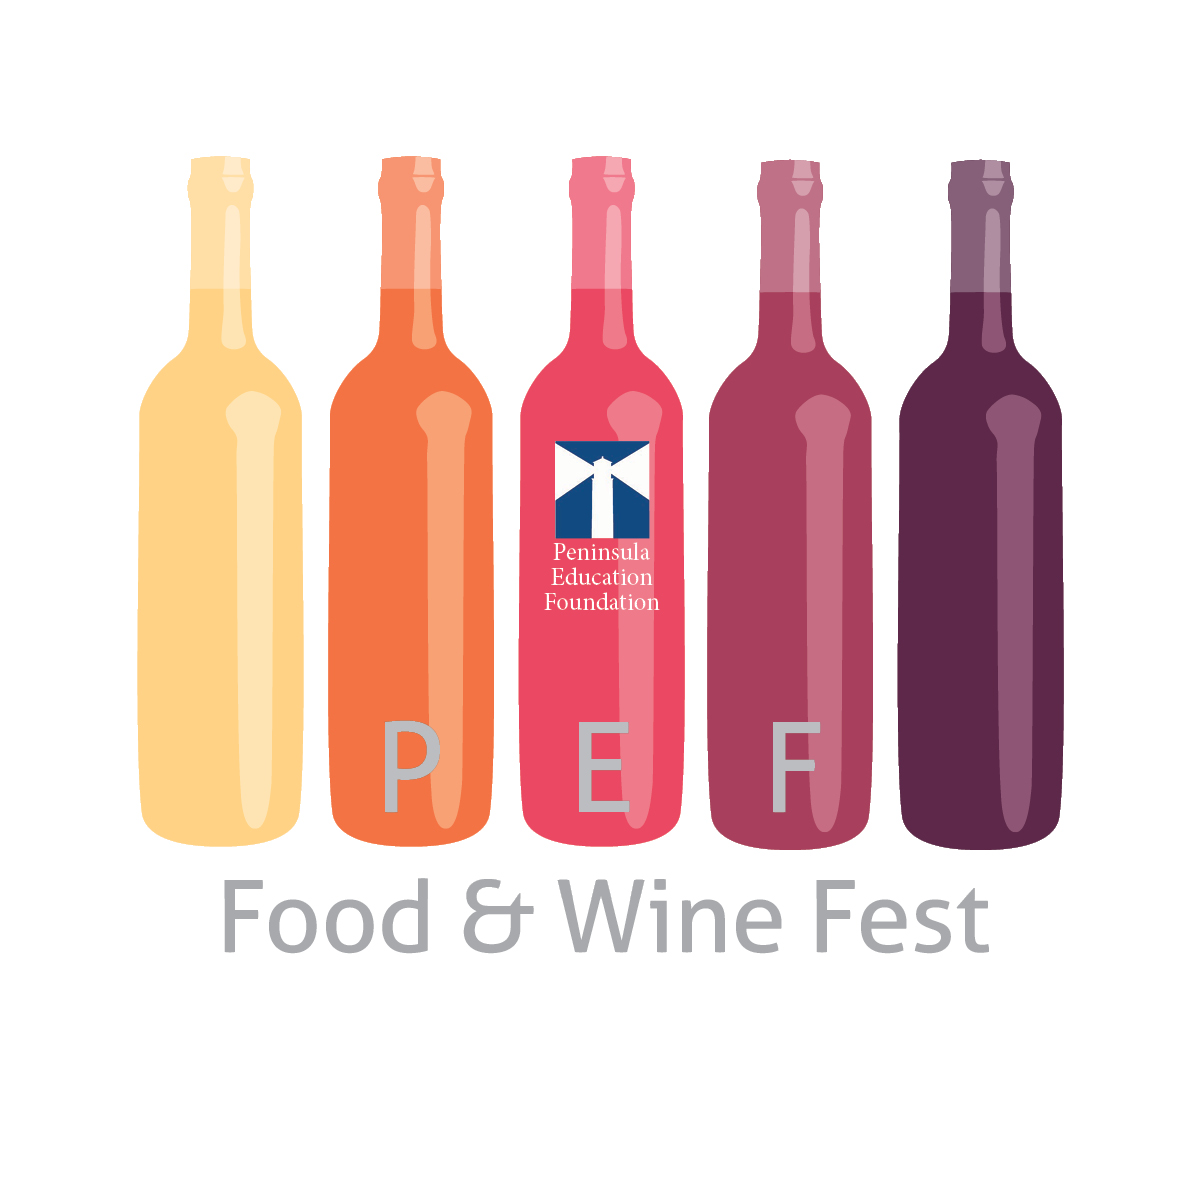 Food & Wine Fest